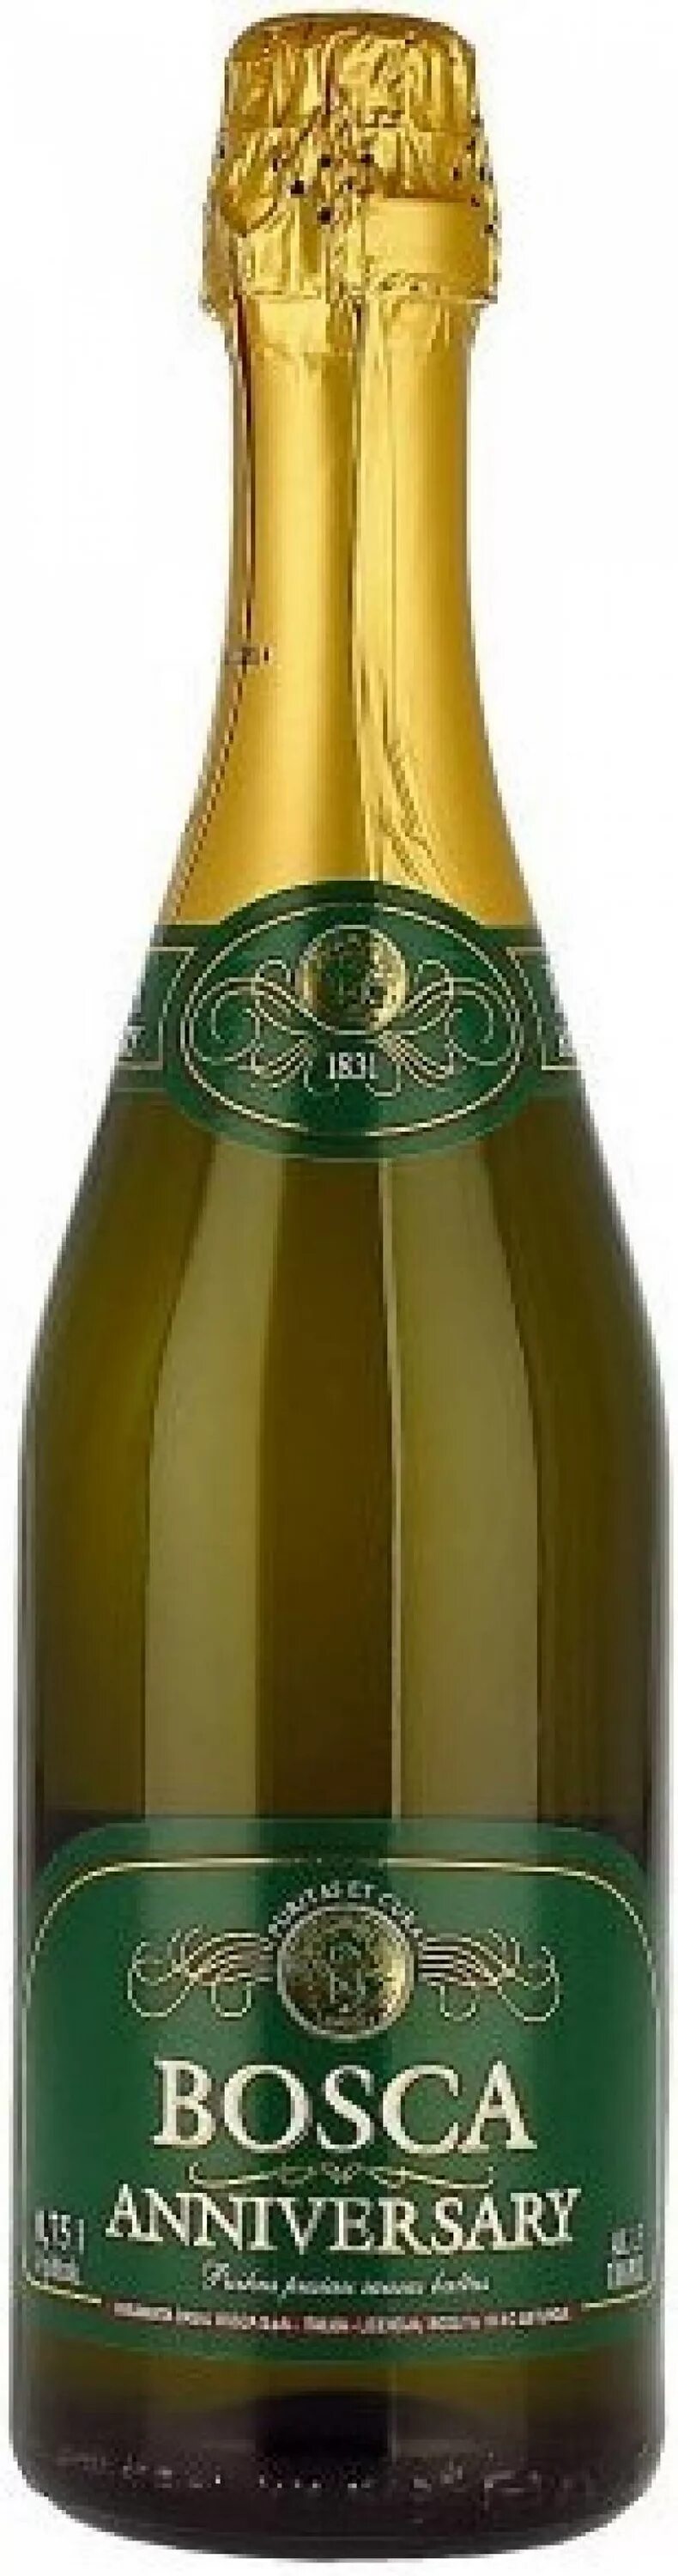 Боска эниверсаришампанское белое. Вино Bosca Anniversary. Боско зеленое шампанское полусухое. Боско шампанское Анни Версали.